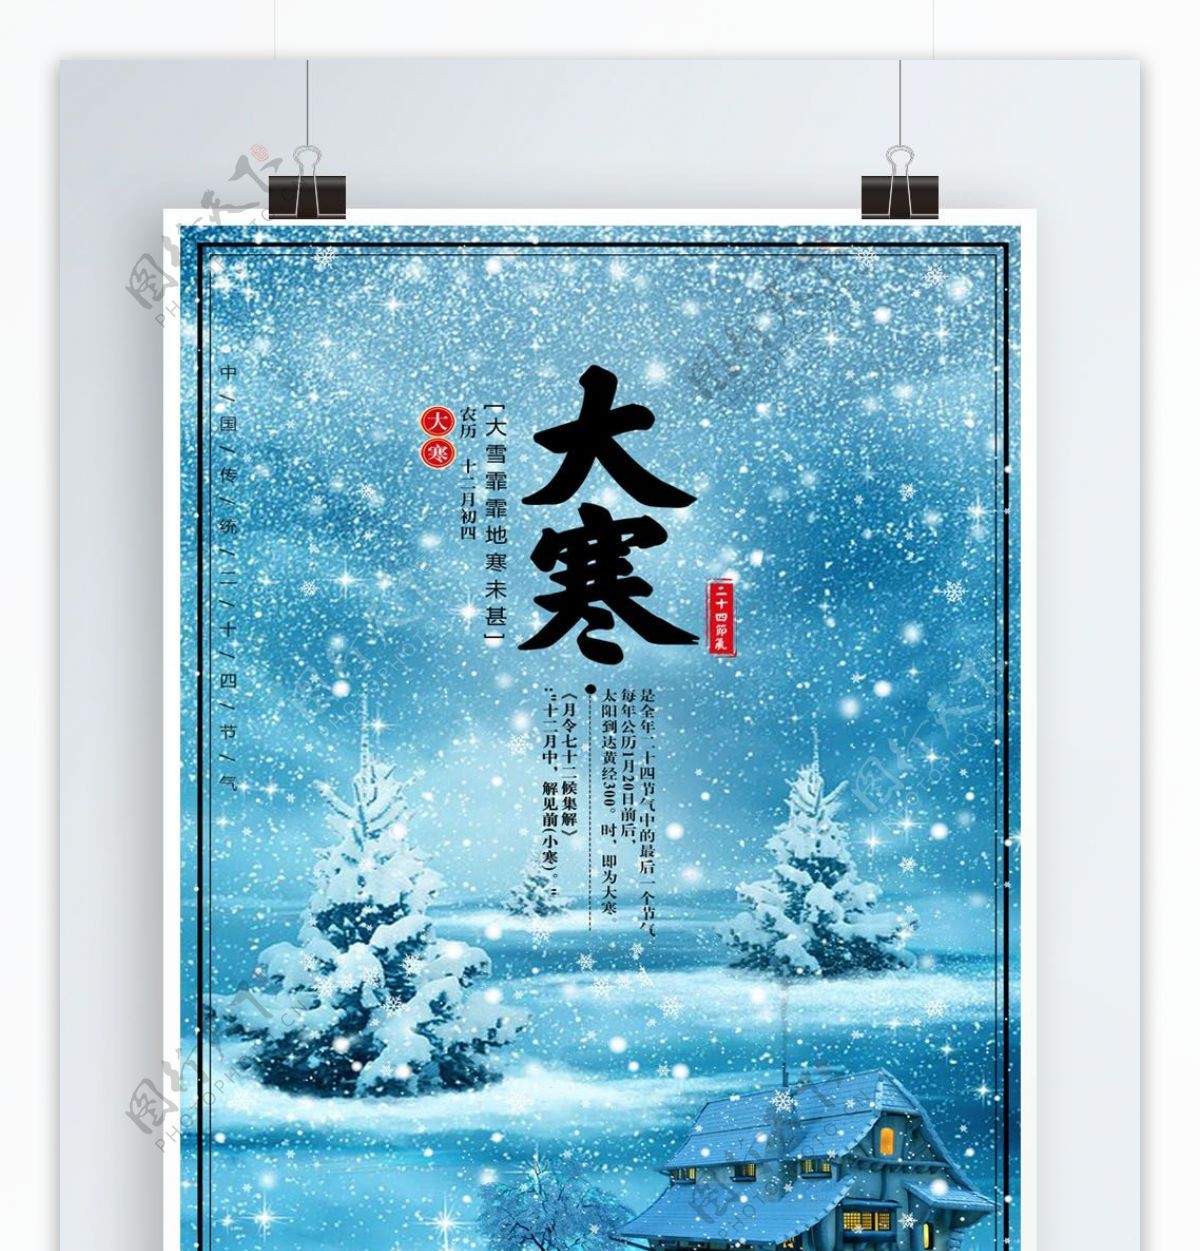 中国24节气大寒海报展板